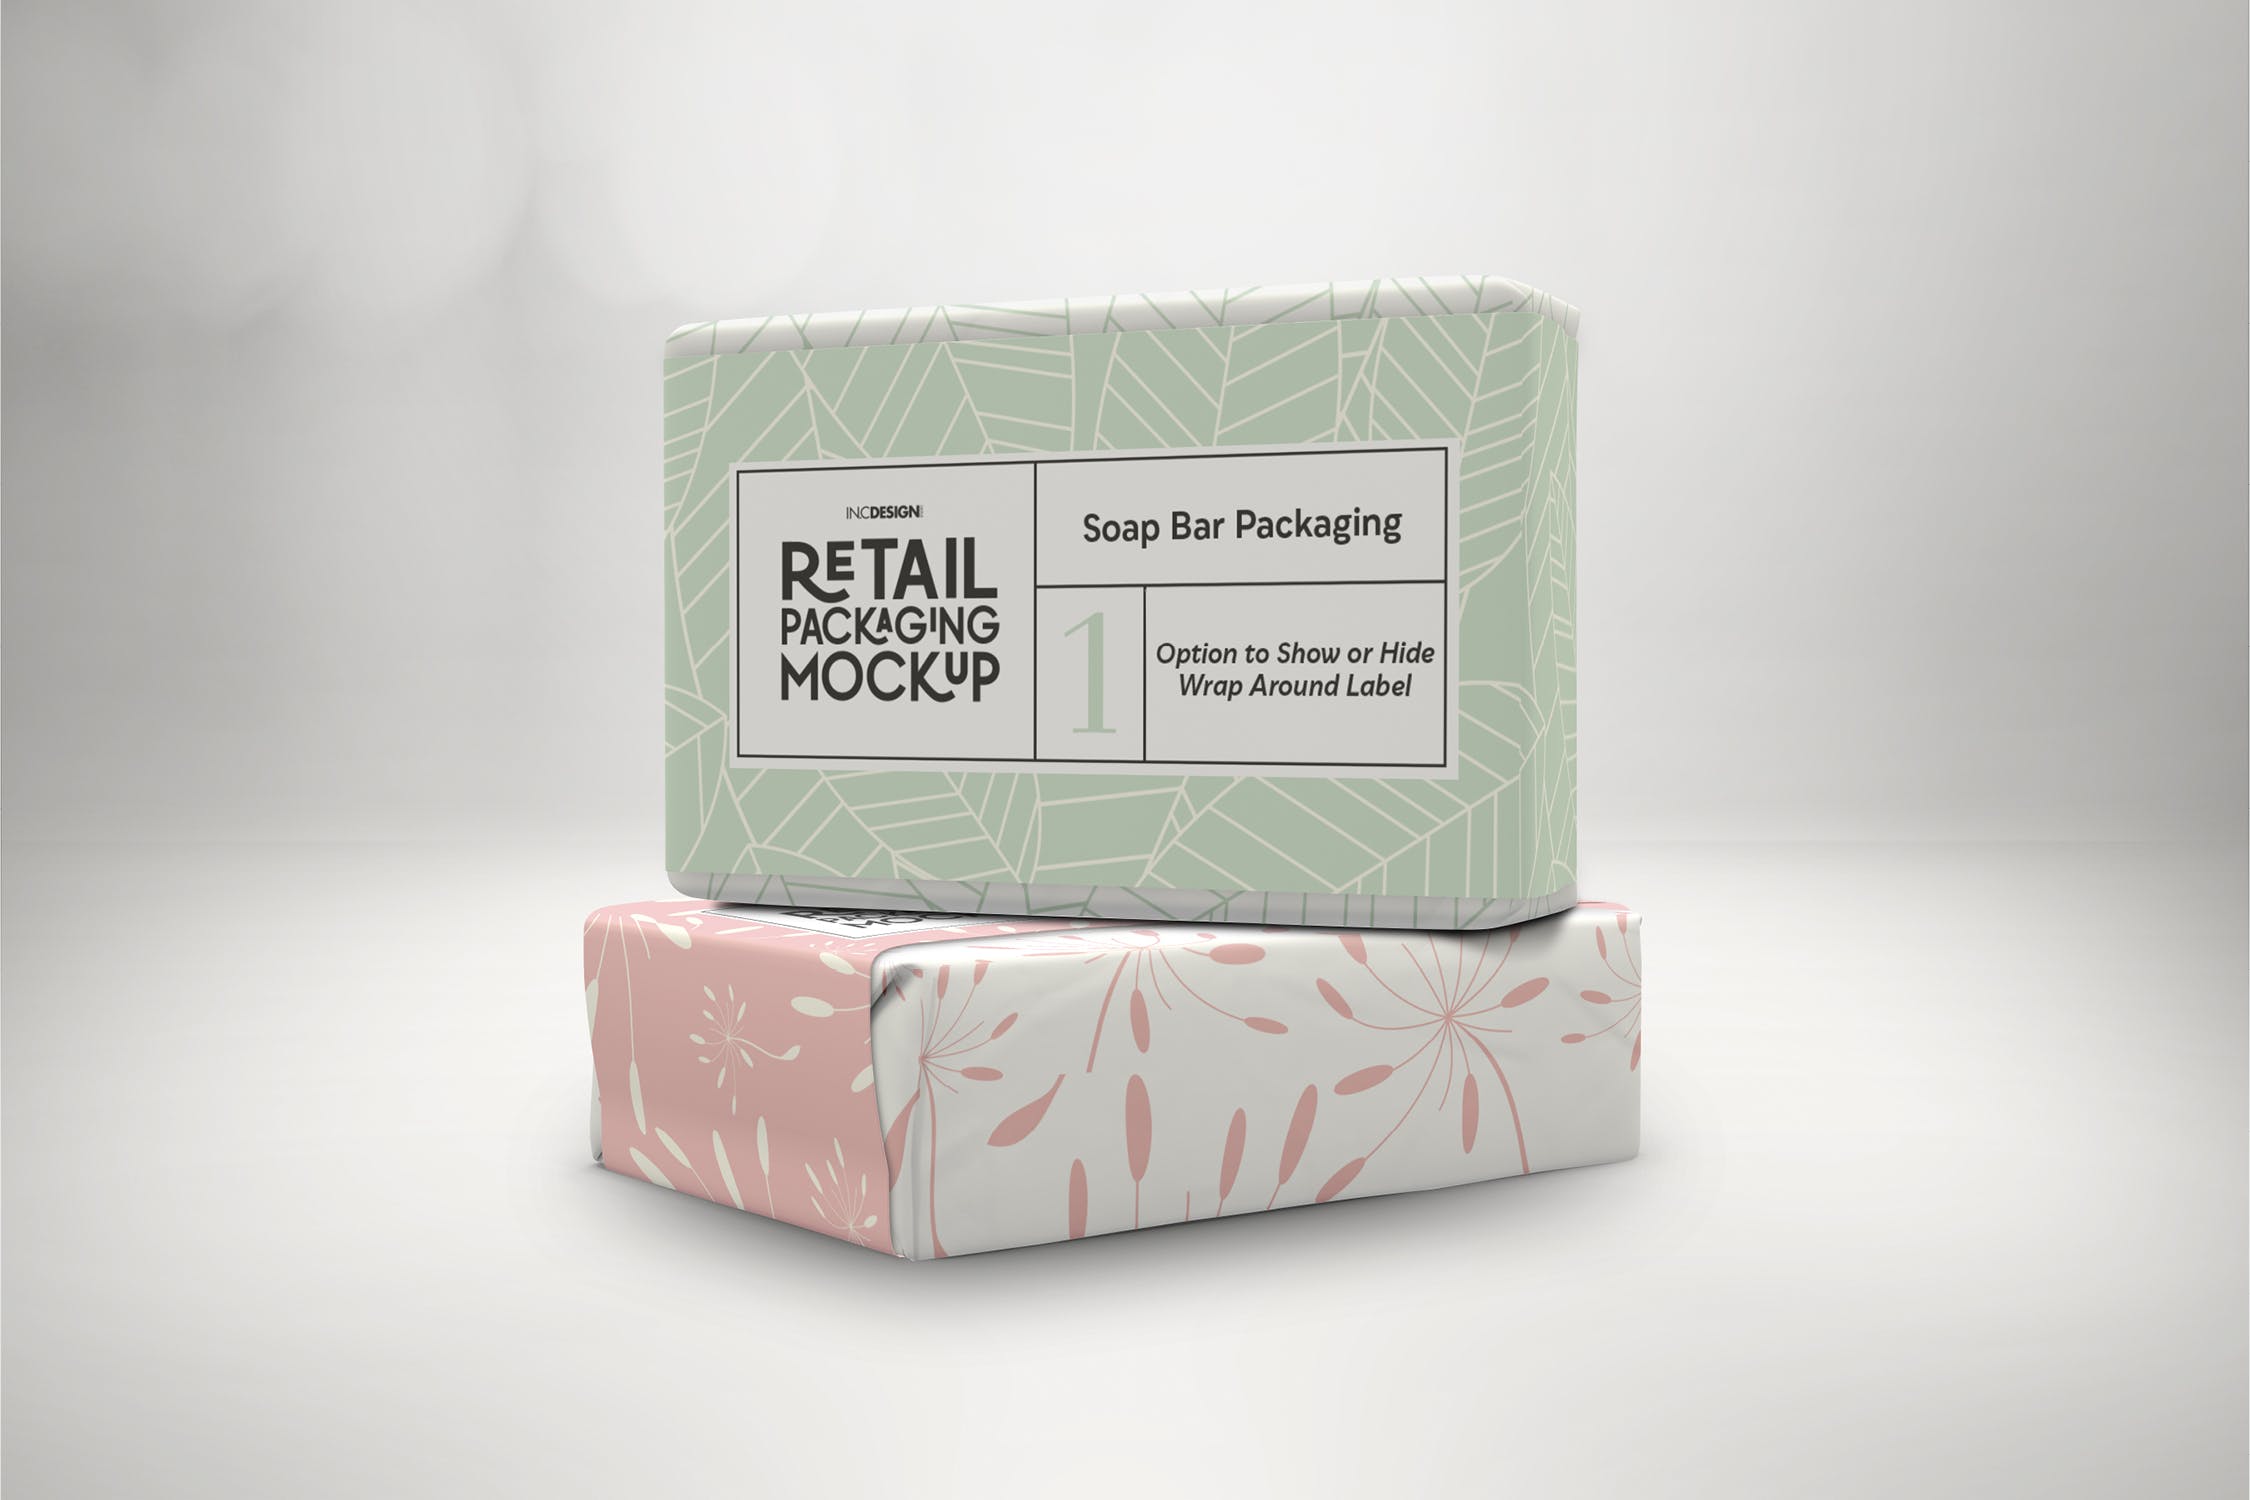 肥皂包装纸袋设计效果图第一素材精选 Retail Soap Bar Packaging Mockup插图(1)